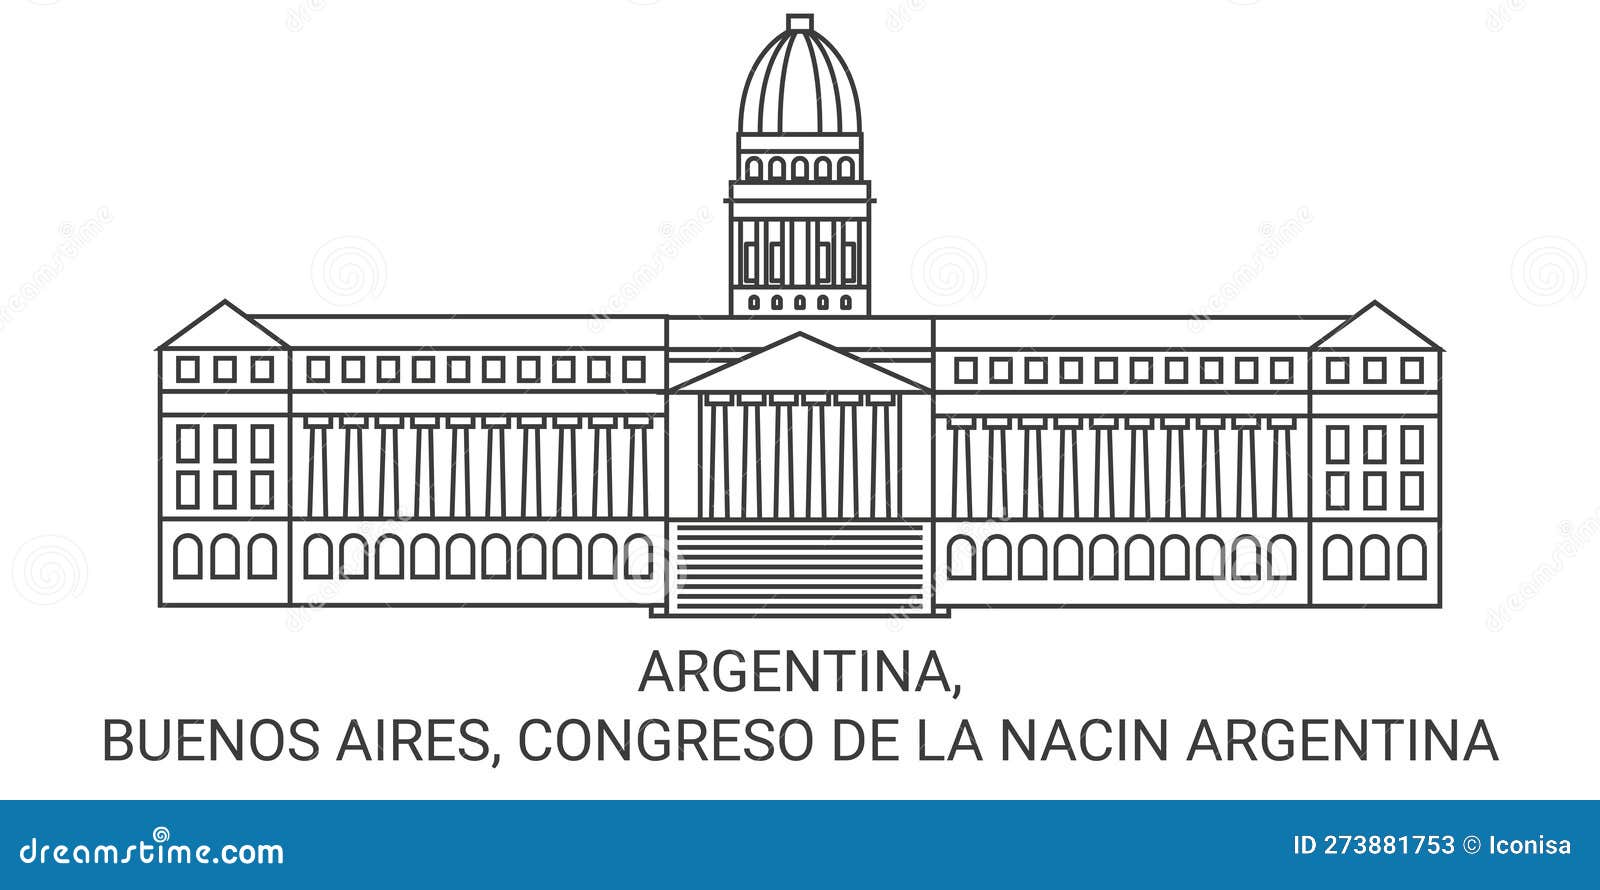 argentina, buenos aires, congreso de la nacin argentina travel landmark  